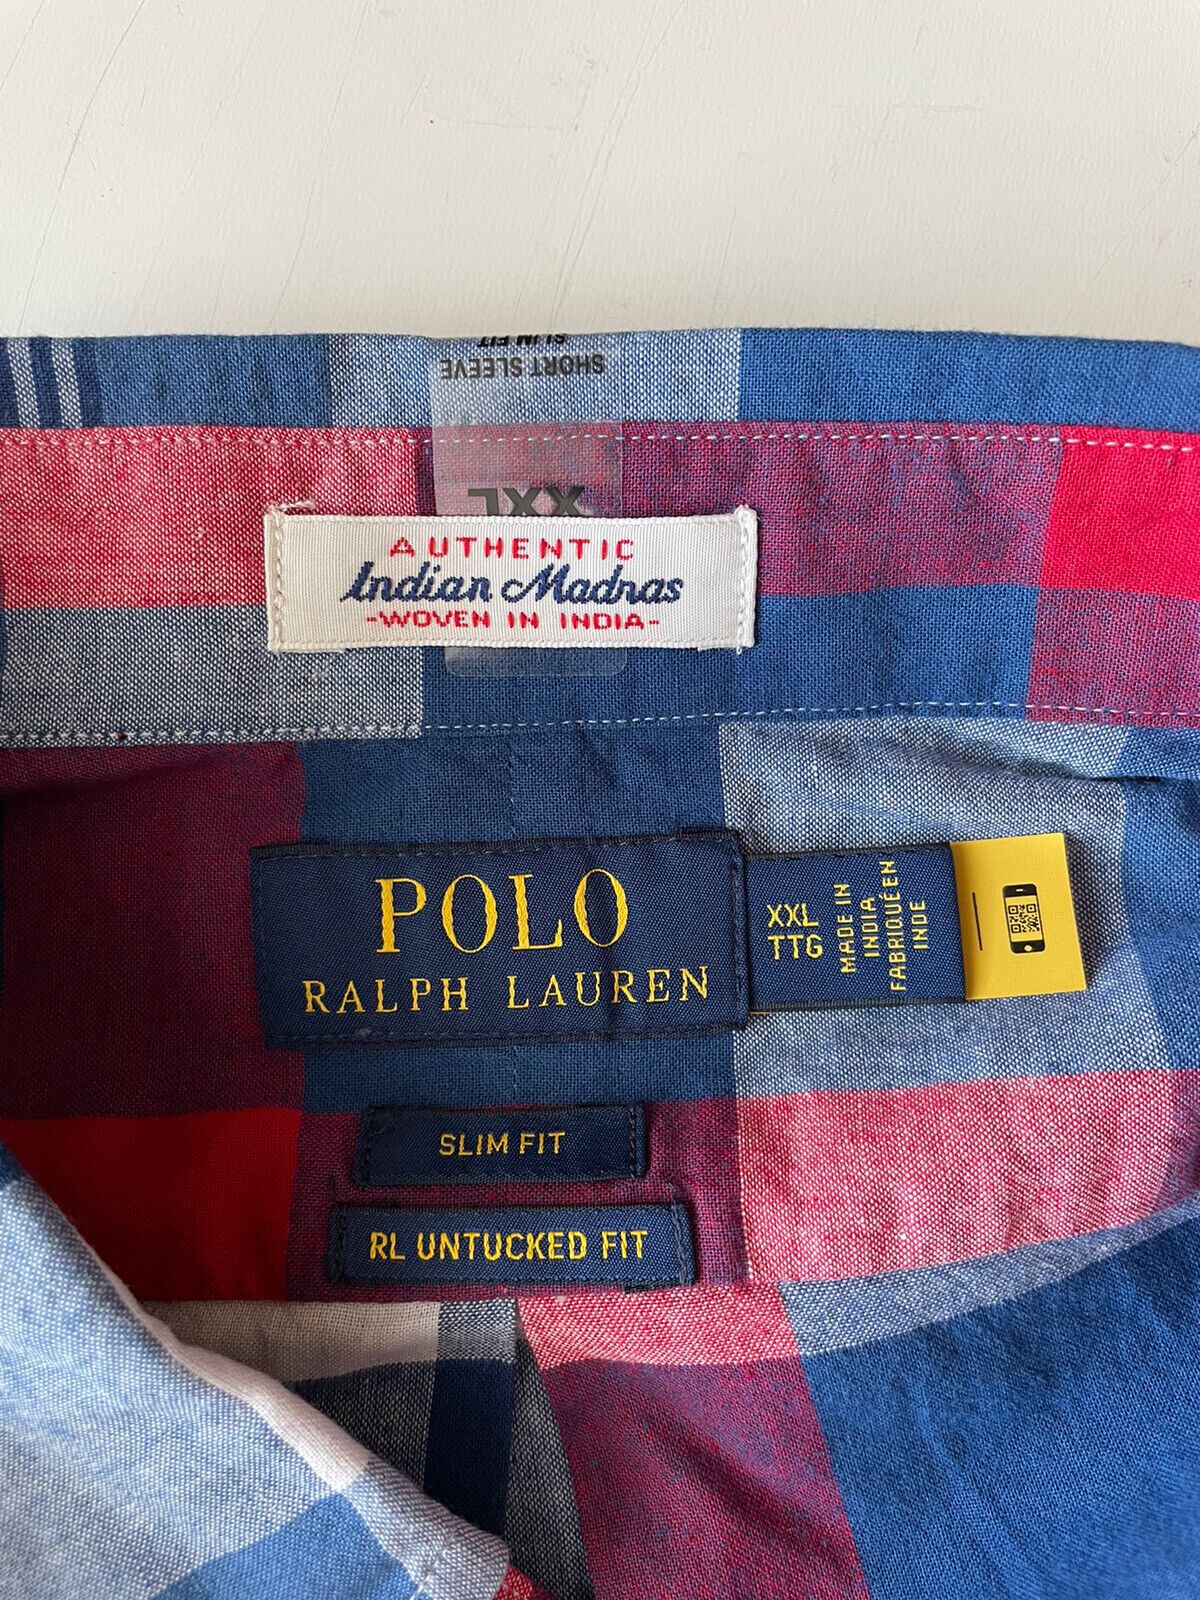 Neu mit Etikett: Polo Ralph Lauren Herren-Hemd mit kurzen Ärmeln, mehrfarbig, 2XL/2TG